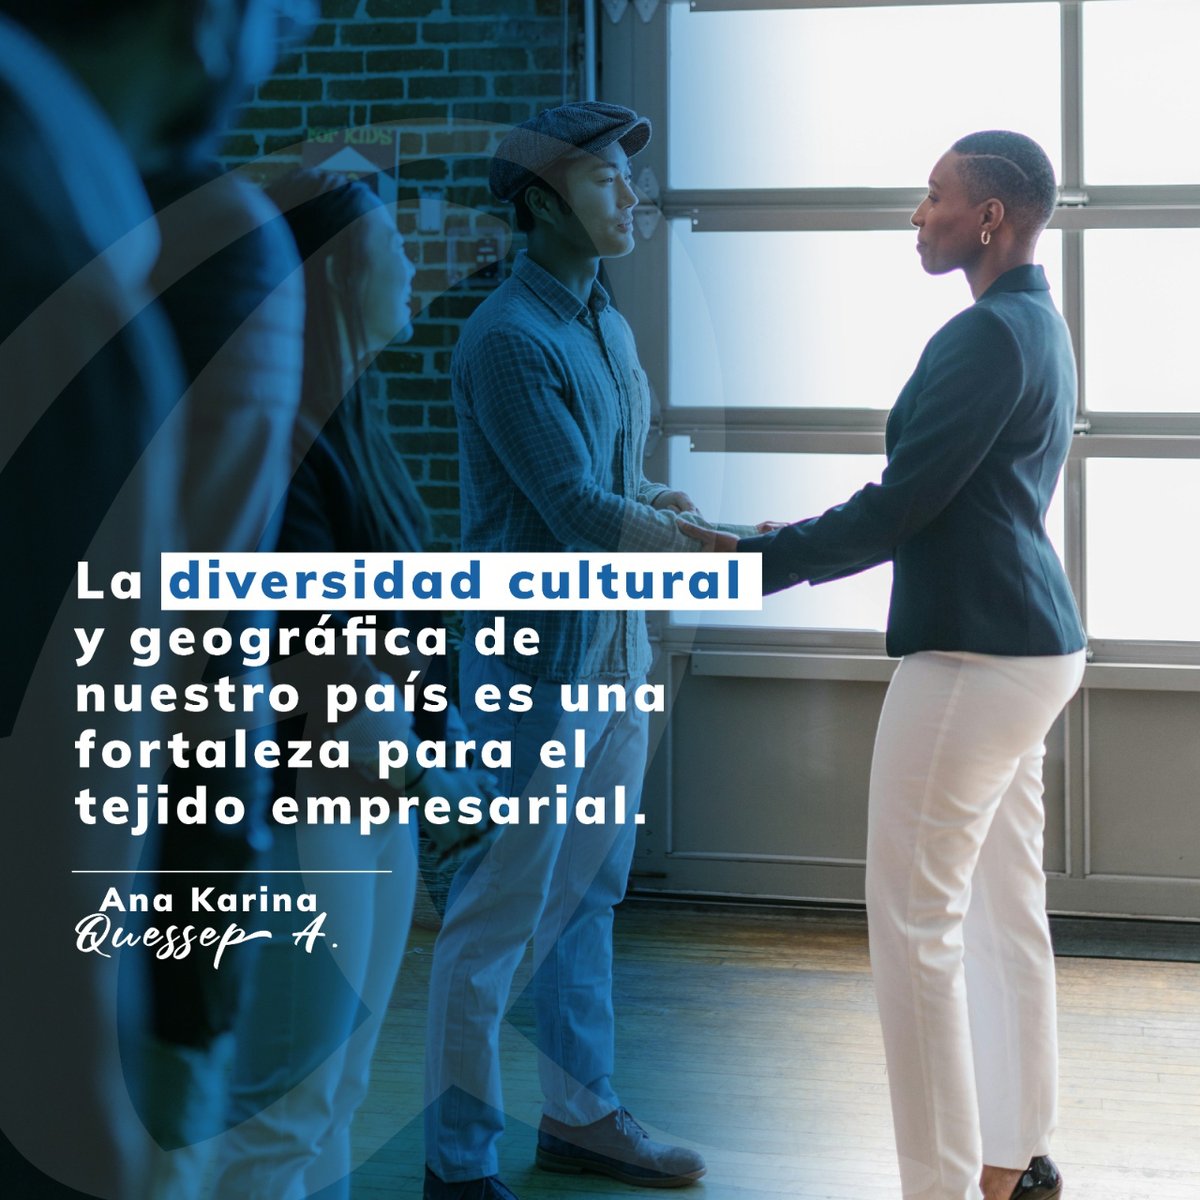 La diversidad cultural y geográfica de Colombia es una fortaleza para el tejido empresarial. Los líderes que fomenten la inclusión y la colaboración en sus equipos estarán mejor preparados para el éxito. #DiversidadEmpresarial #Colombia